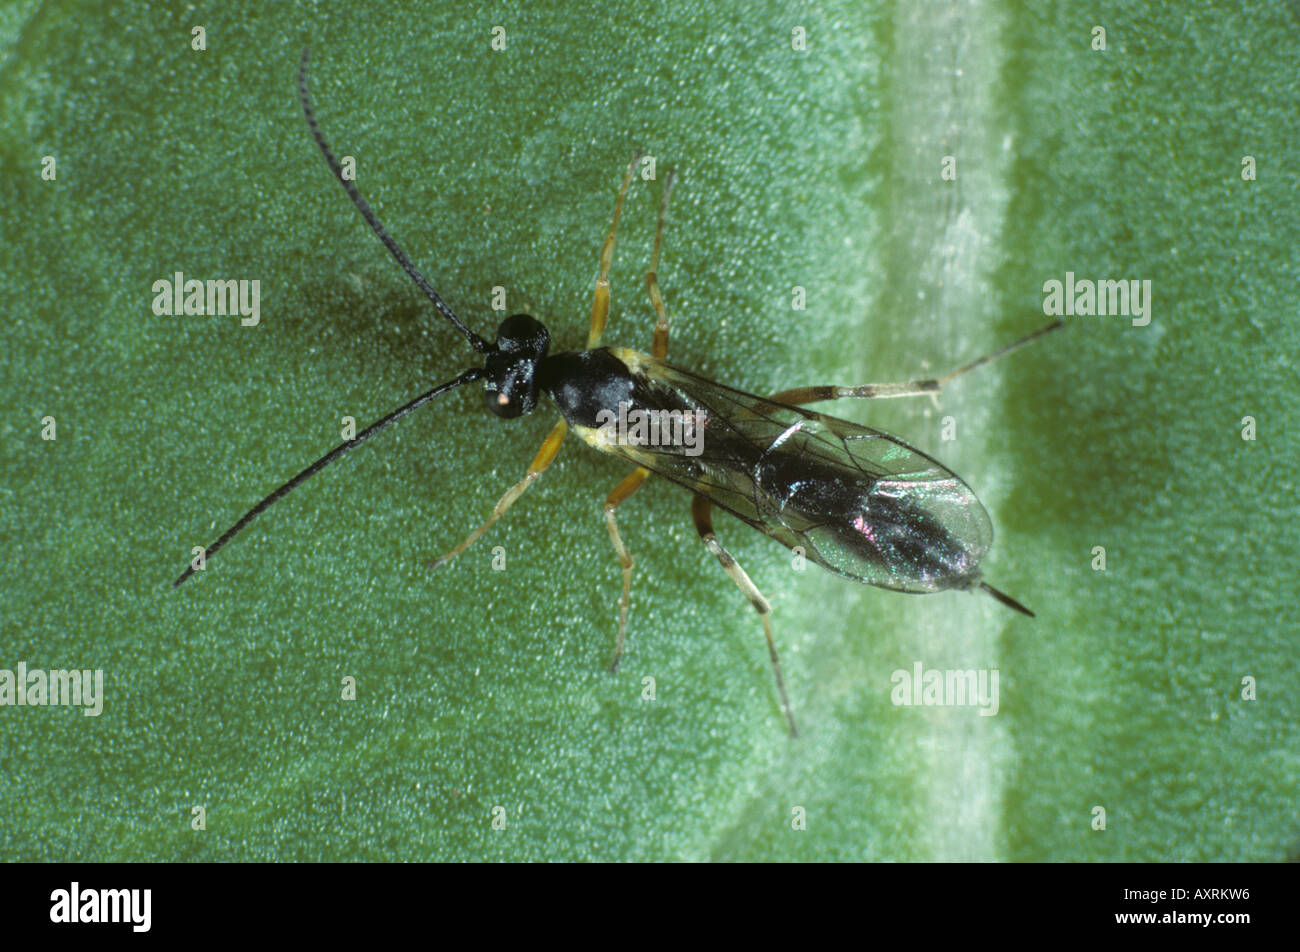 Ichneumonid wasp Diadegma semiclausum parasitoid od diamond back moth caterpillars Stock Photo